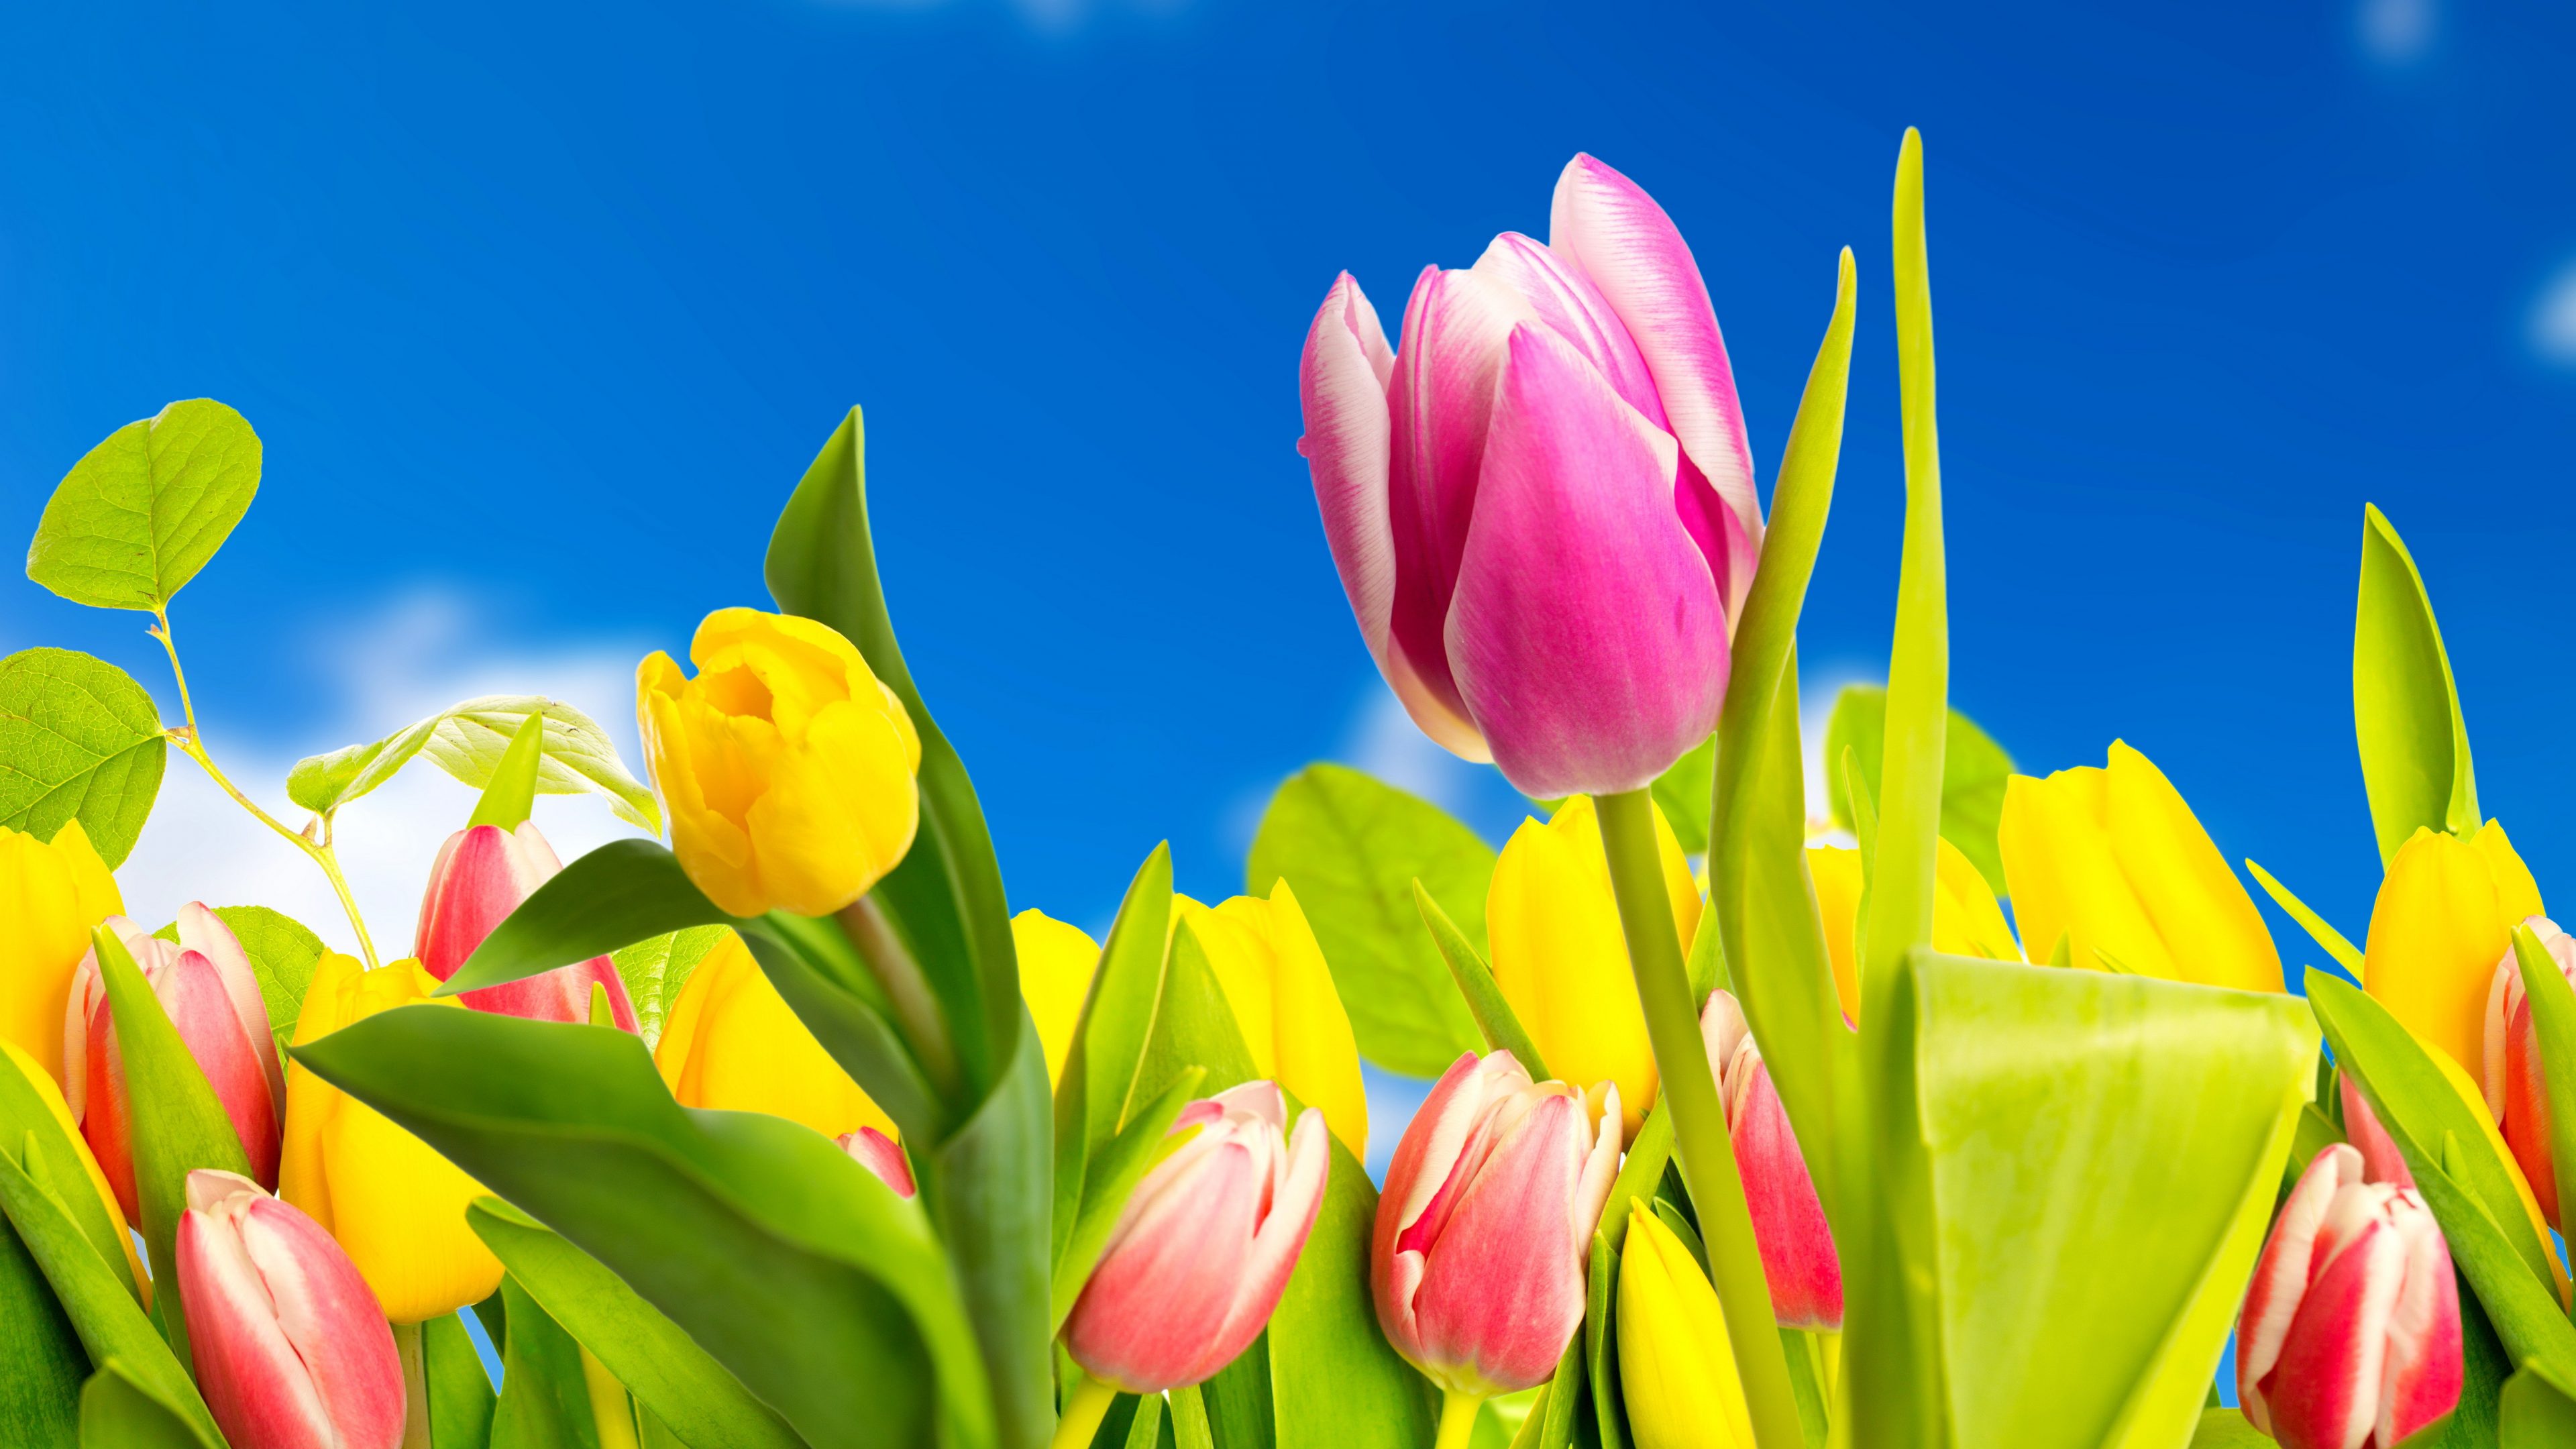 Bộ Sưu Tập Hình Nền Hoa Tulip Cực Chất Full 4K Top 999+